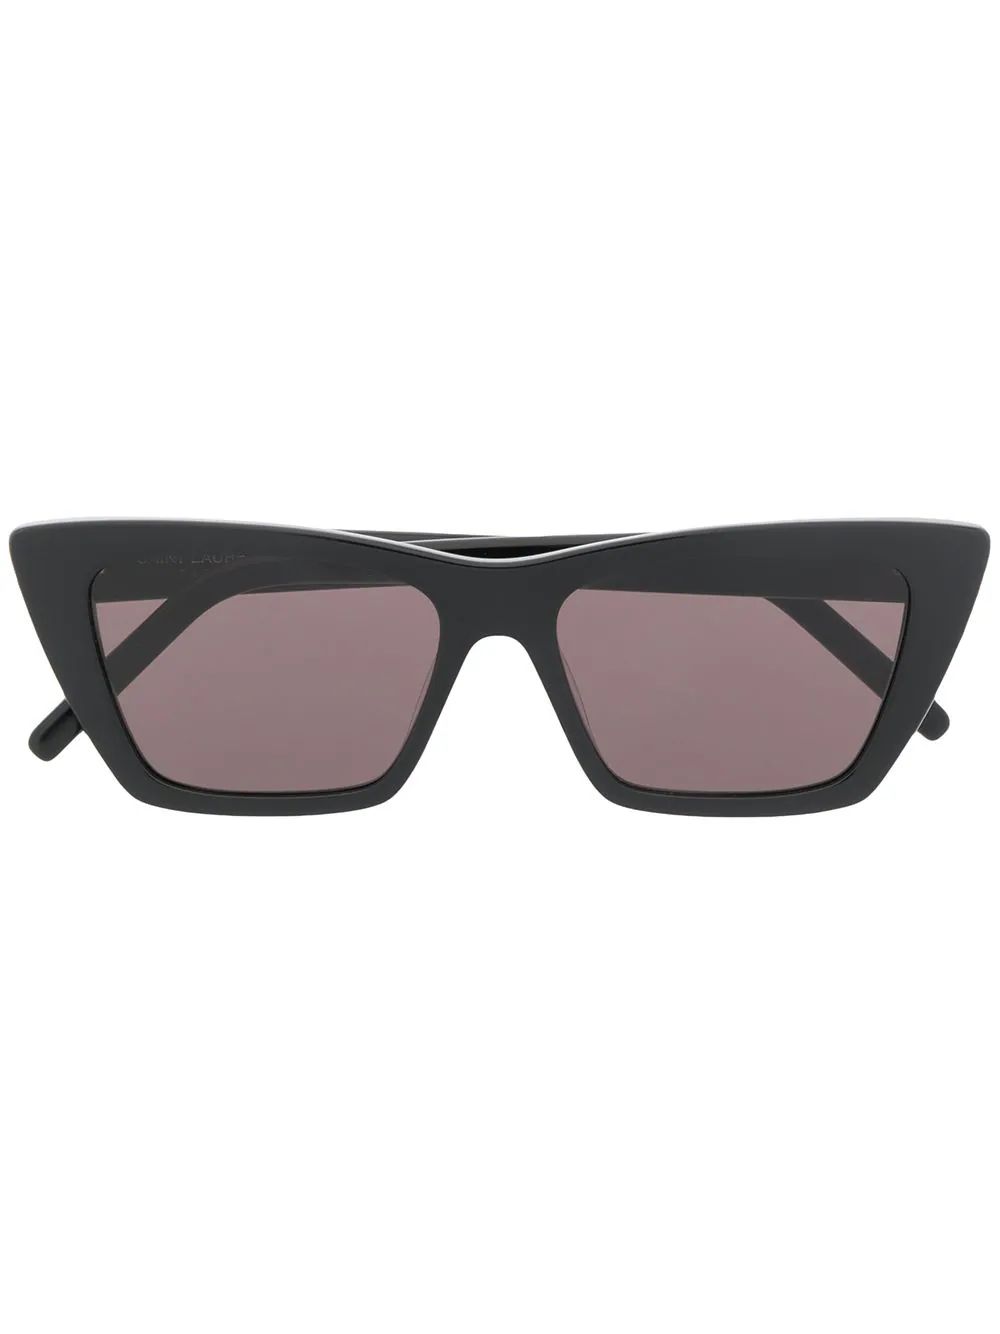 Saint Laurent Eyewear New Wave SL 276 Sunglasses - Farfetch | Farfetch Global